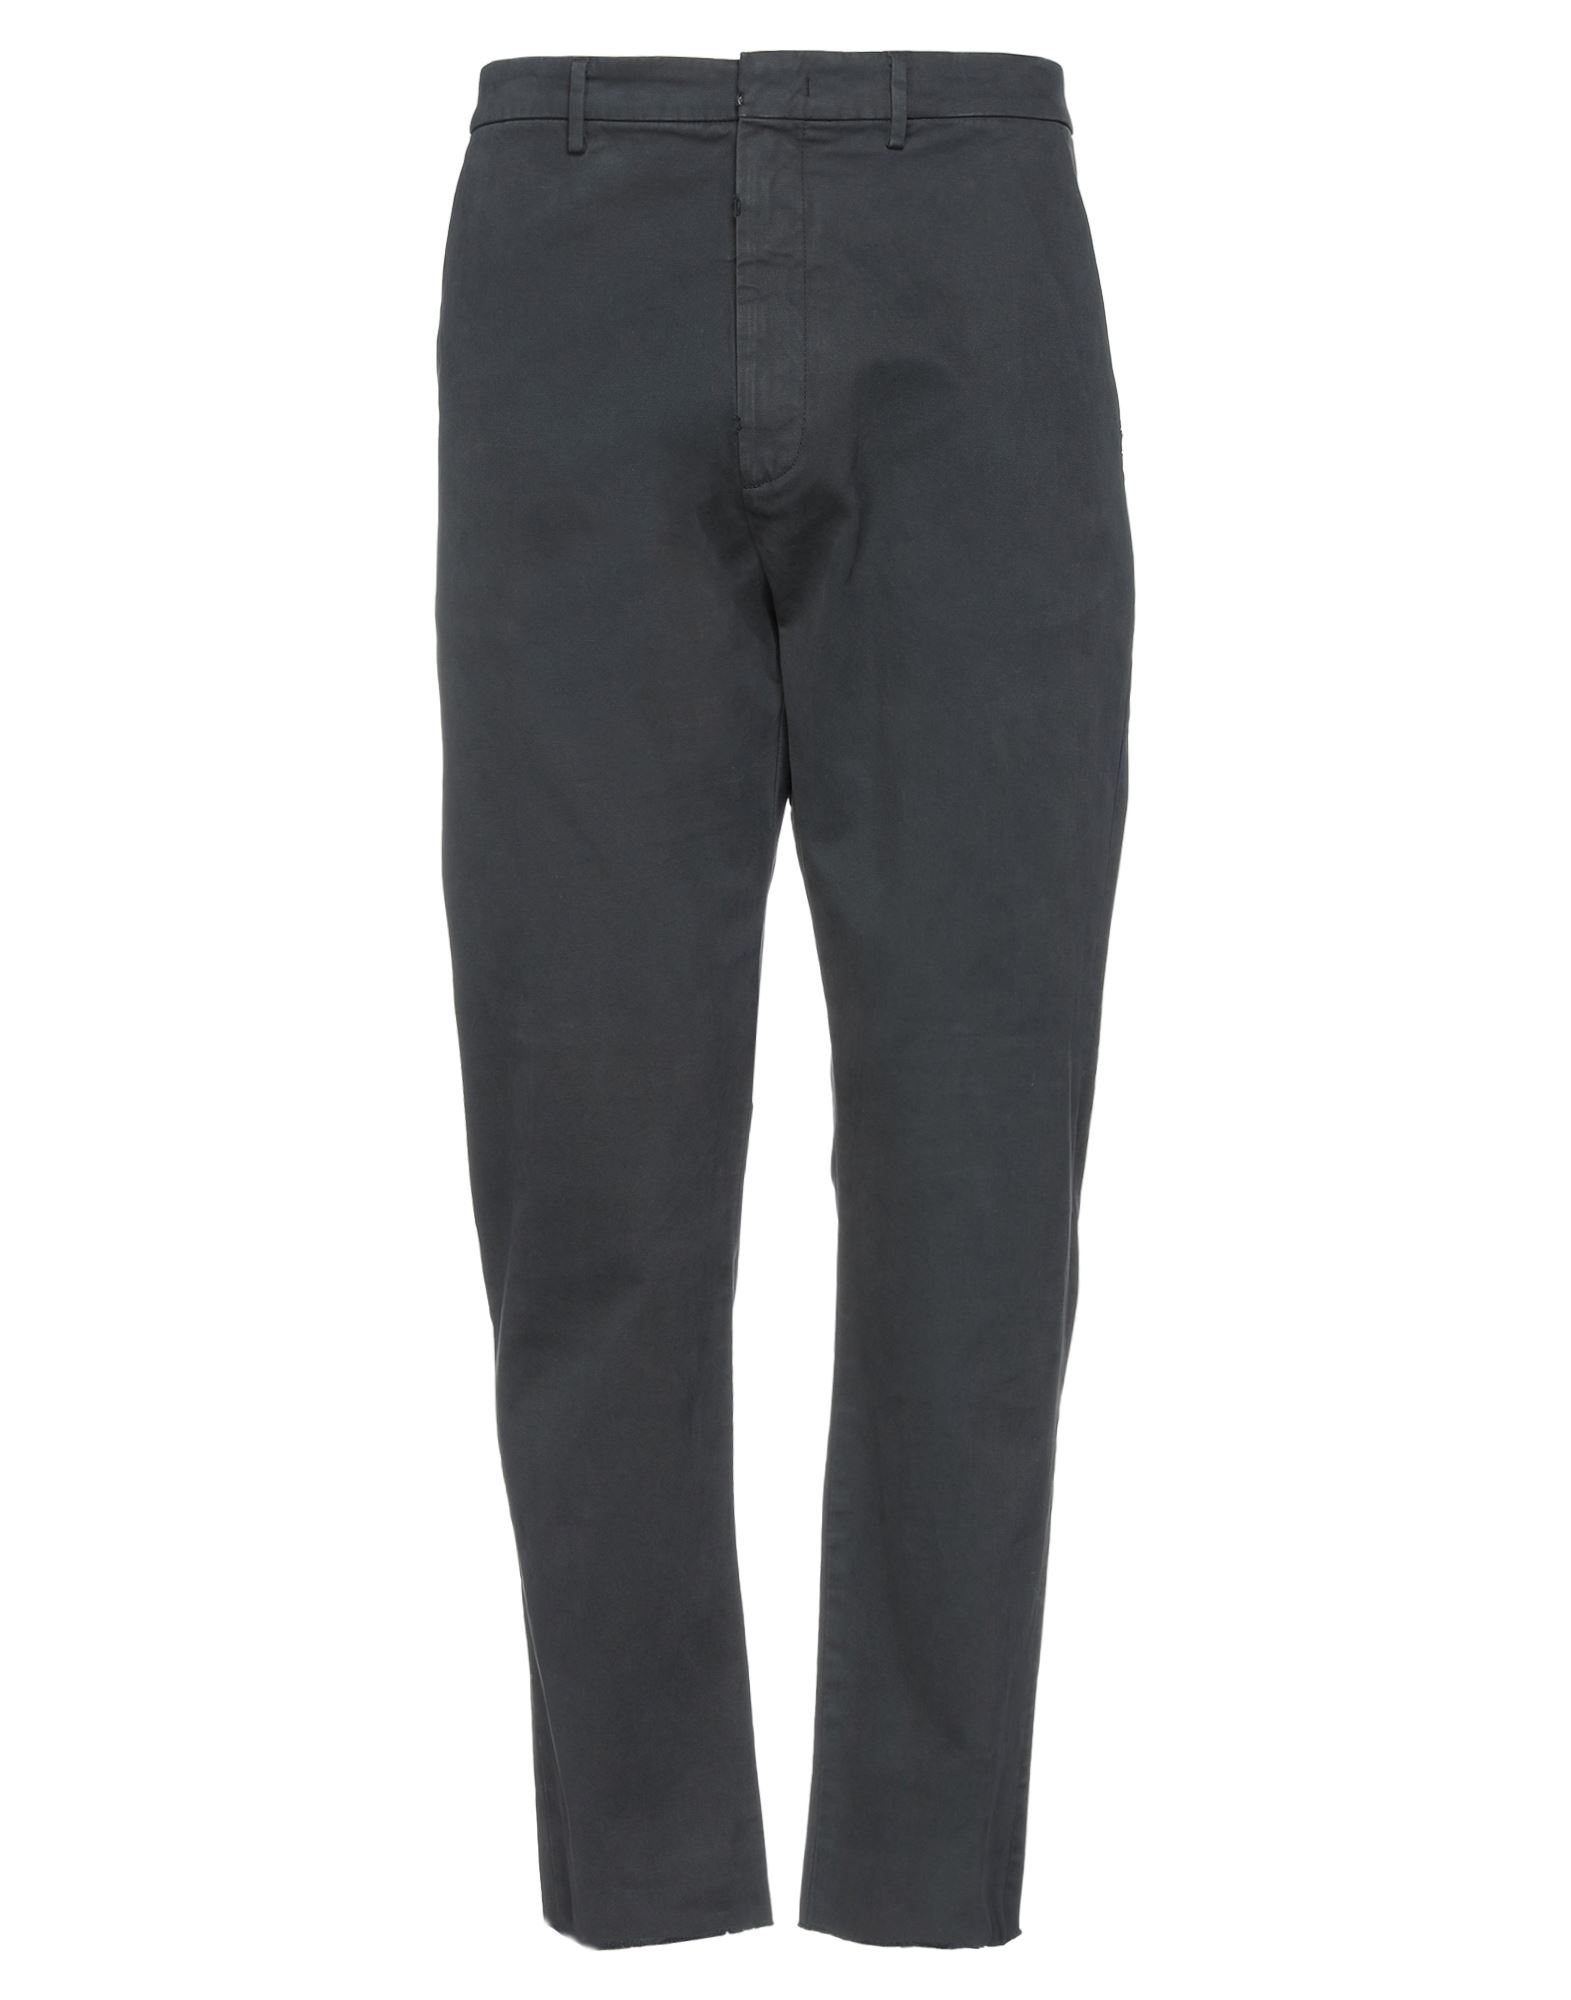 Pence Pants In Steel Grey